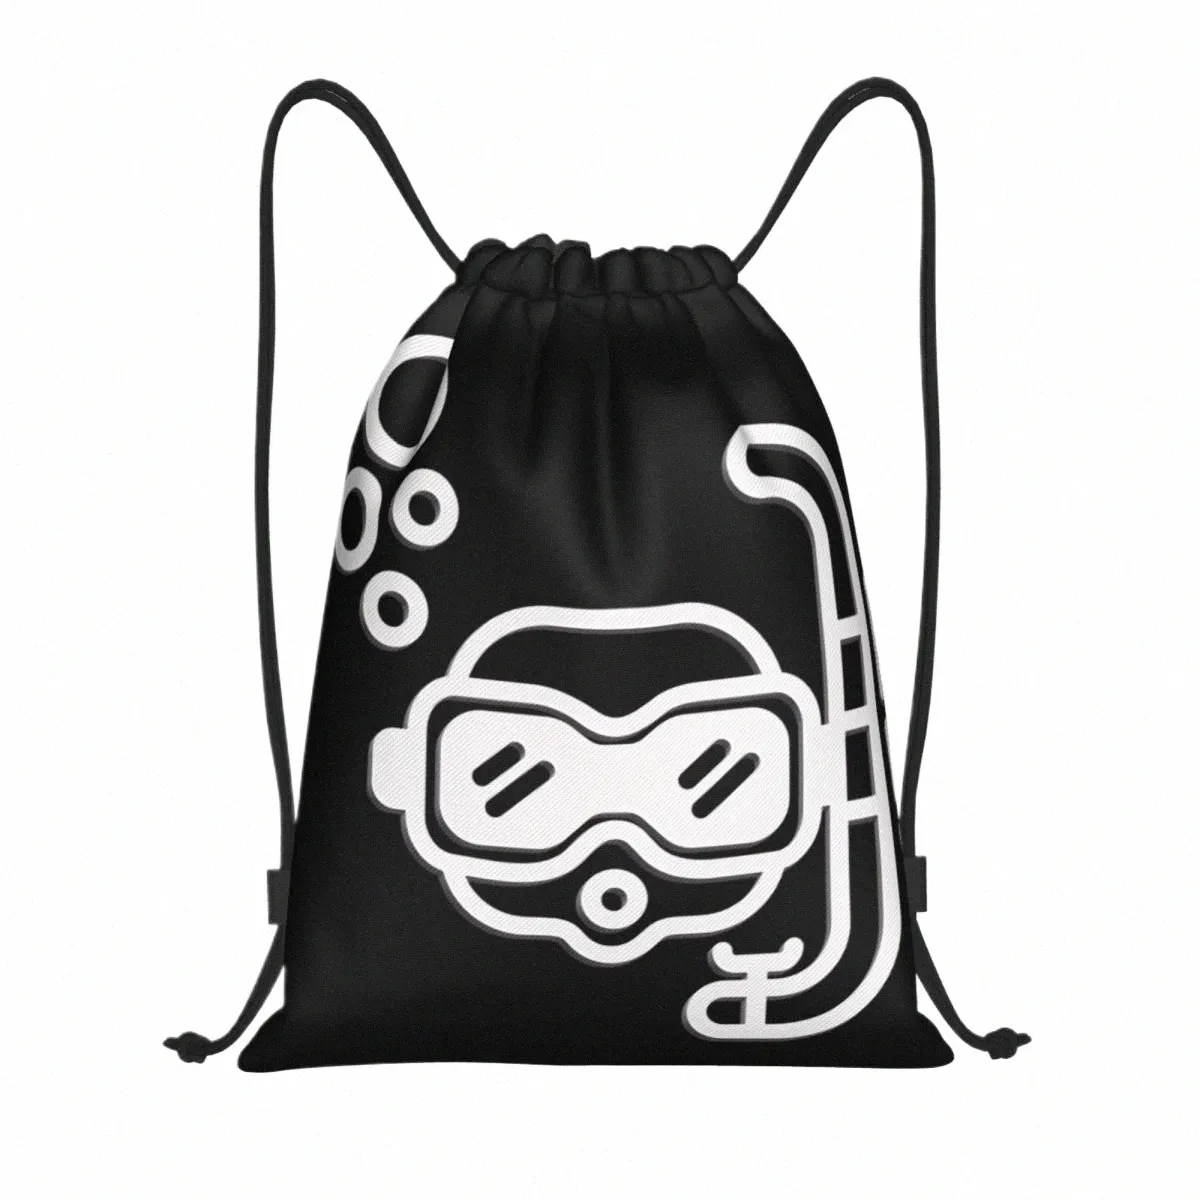 Anpassad dykning scuba Sea Emblem Glasögon Symbol DrawString Bag for Training Yoga Ryggsäckar Kvinnor Män dyker Sport Gym Sackpack M95D#